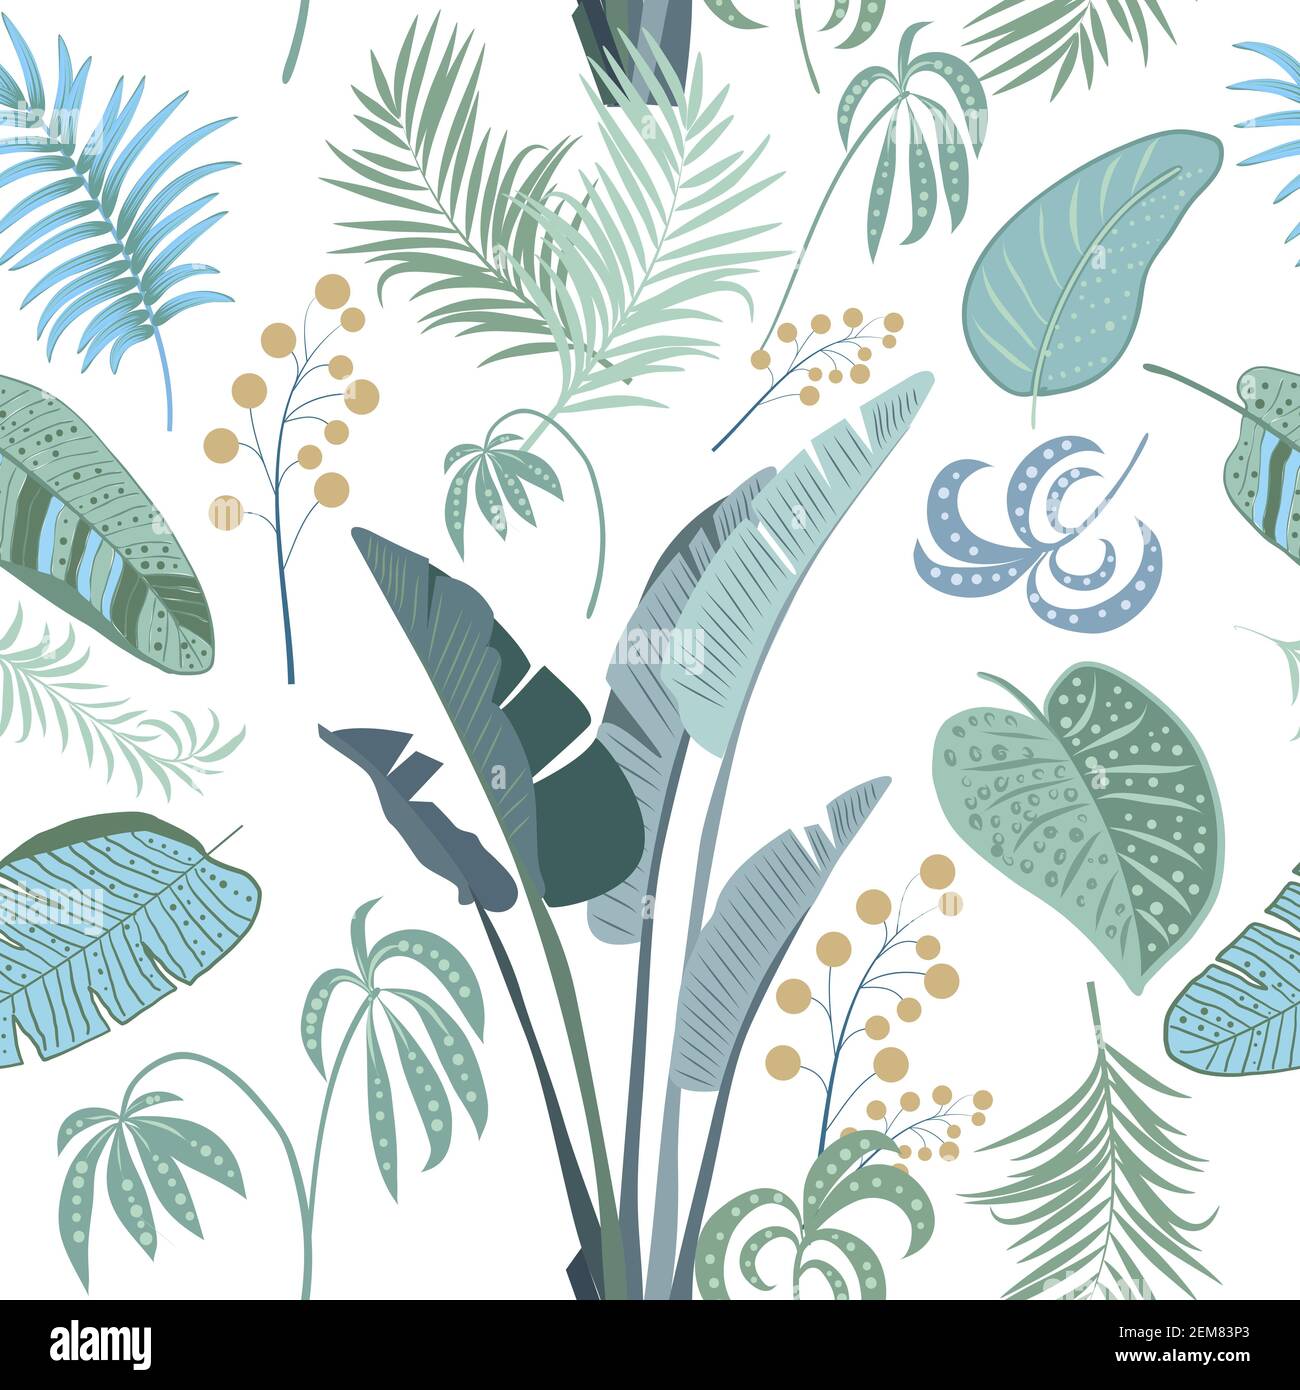 Vettore tropicale modello senza giunture con foglie di palma e fiori. Sfondo chiaro botanica, carta da parati giungla. Illustrazione Vettoriale